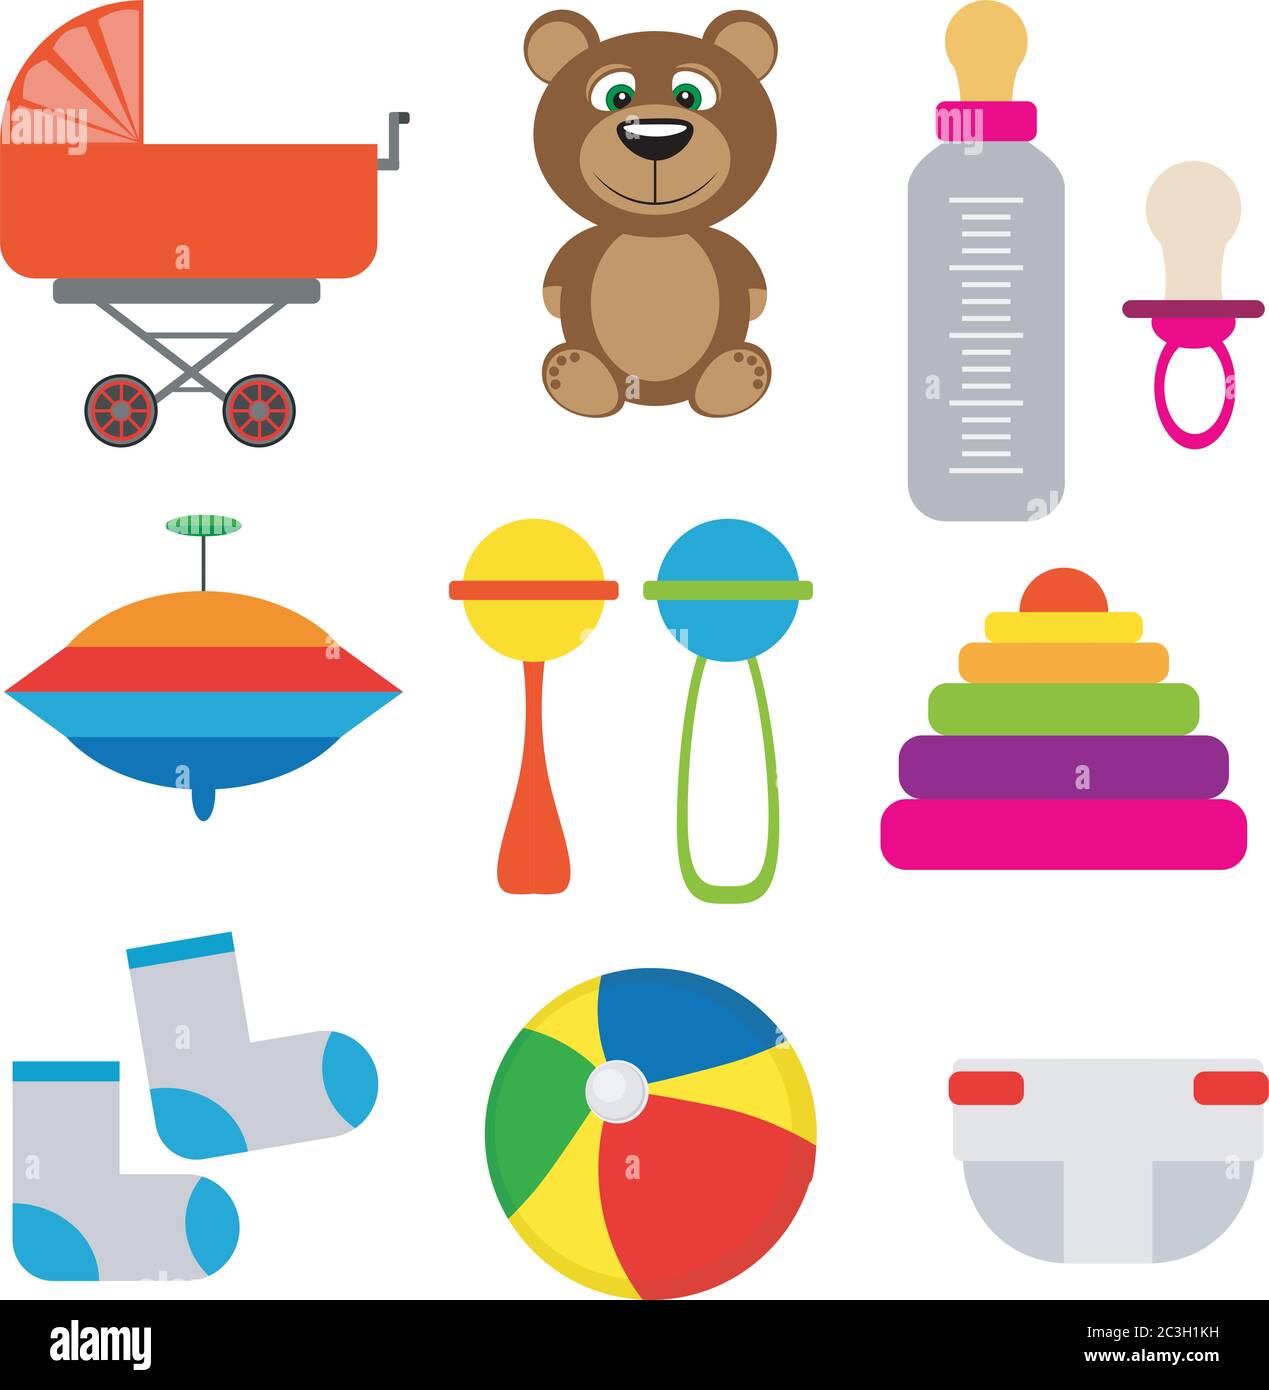 Baby kit: stroller, feeding bottle, socks, toys. Vector illustration in flat style on white isolated background. Stock Vector